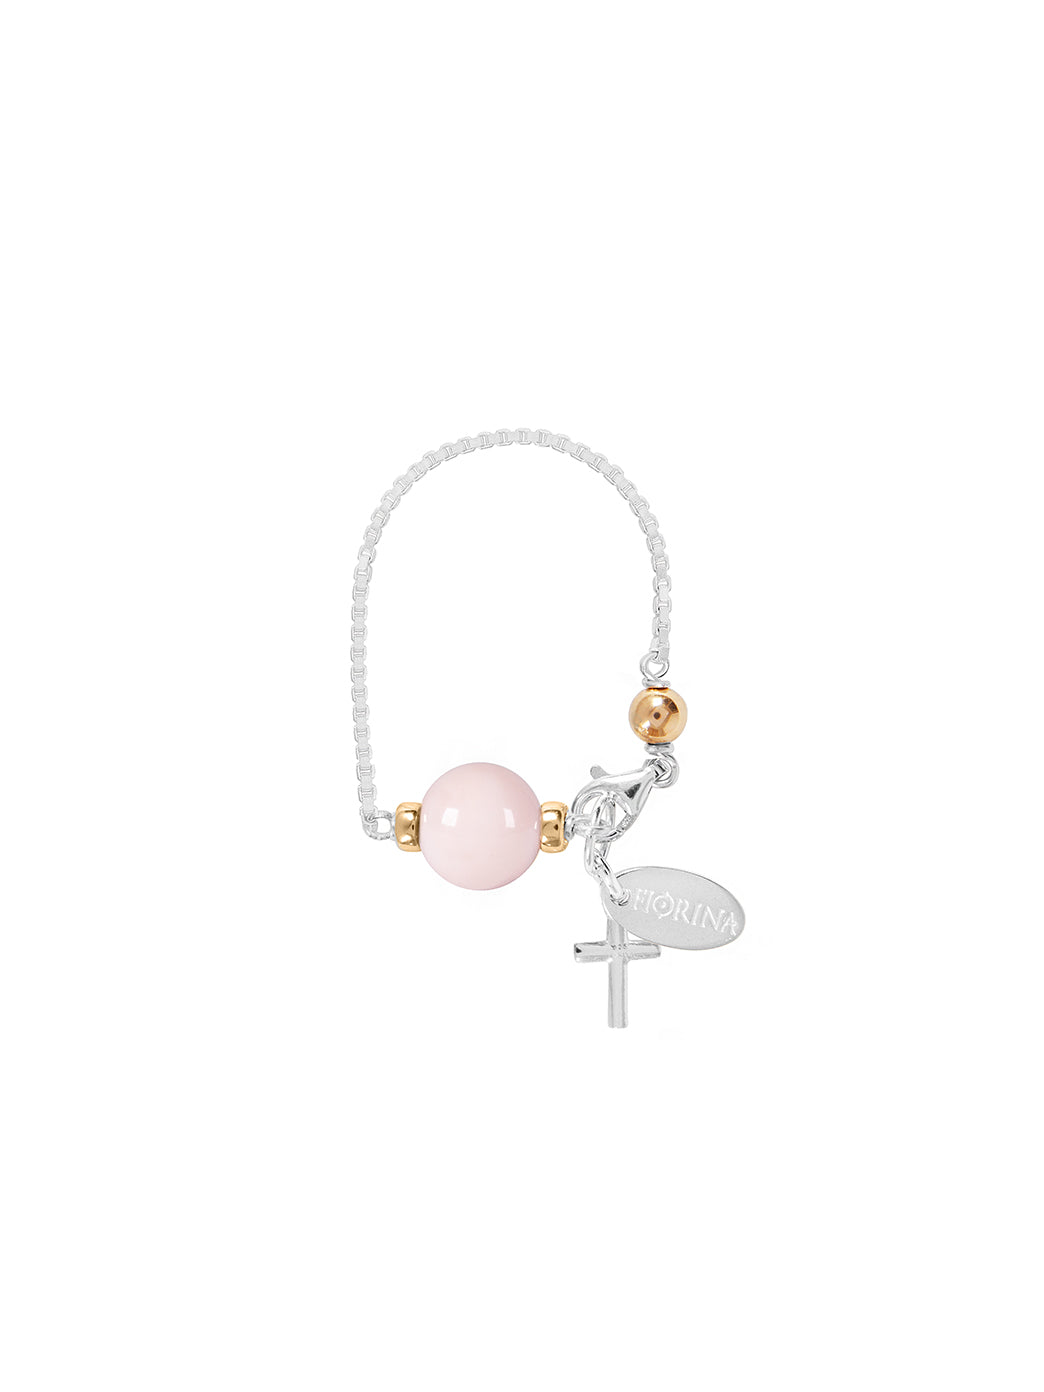 Fiorina Jewellery Baby Comfort Bracelet Pink Opal